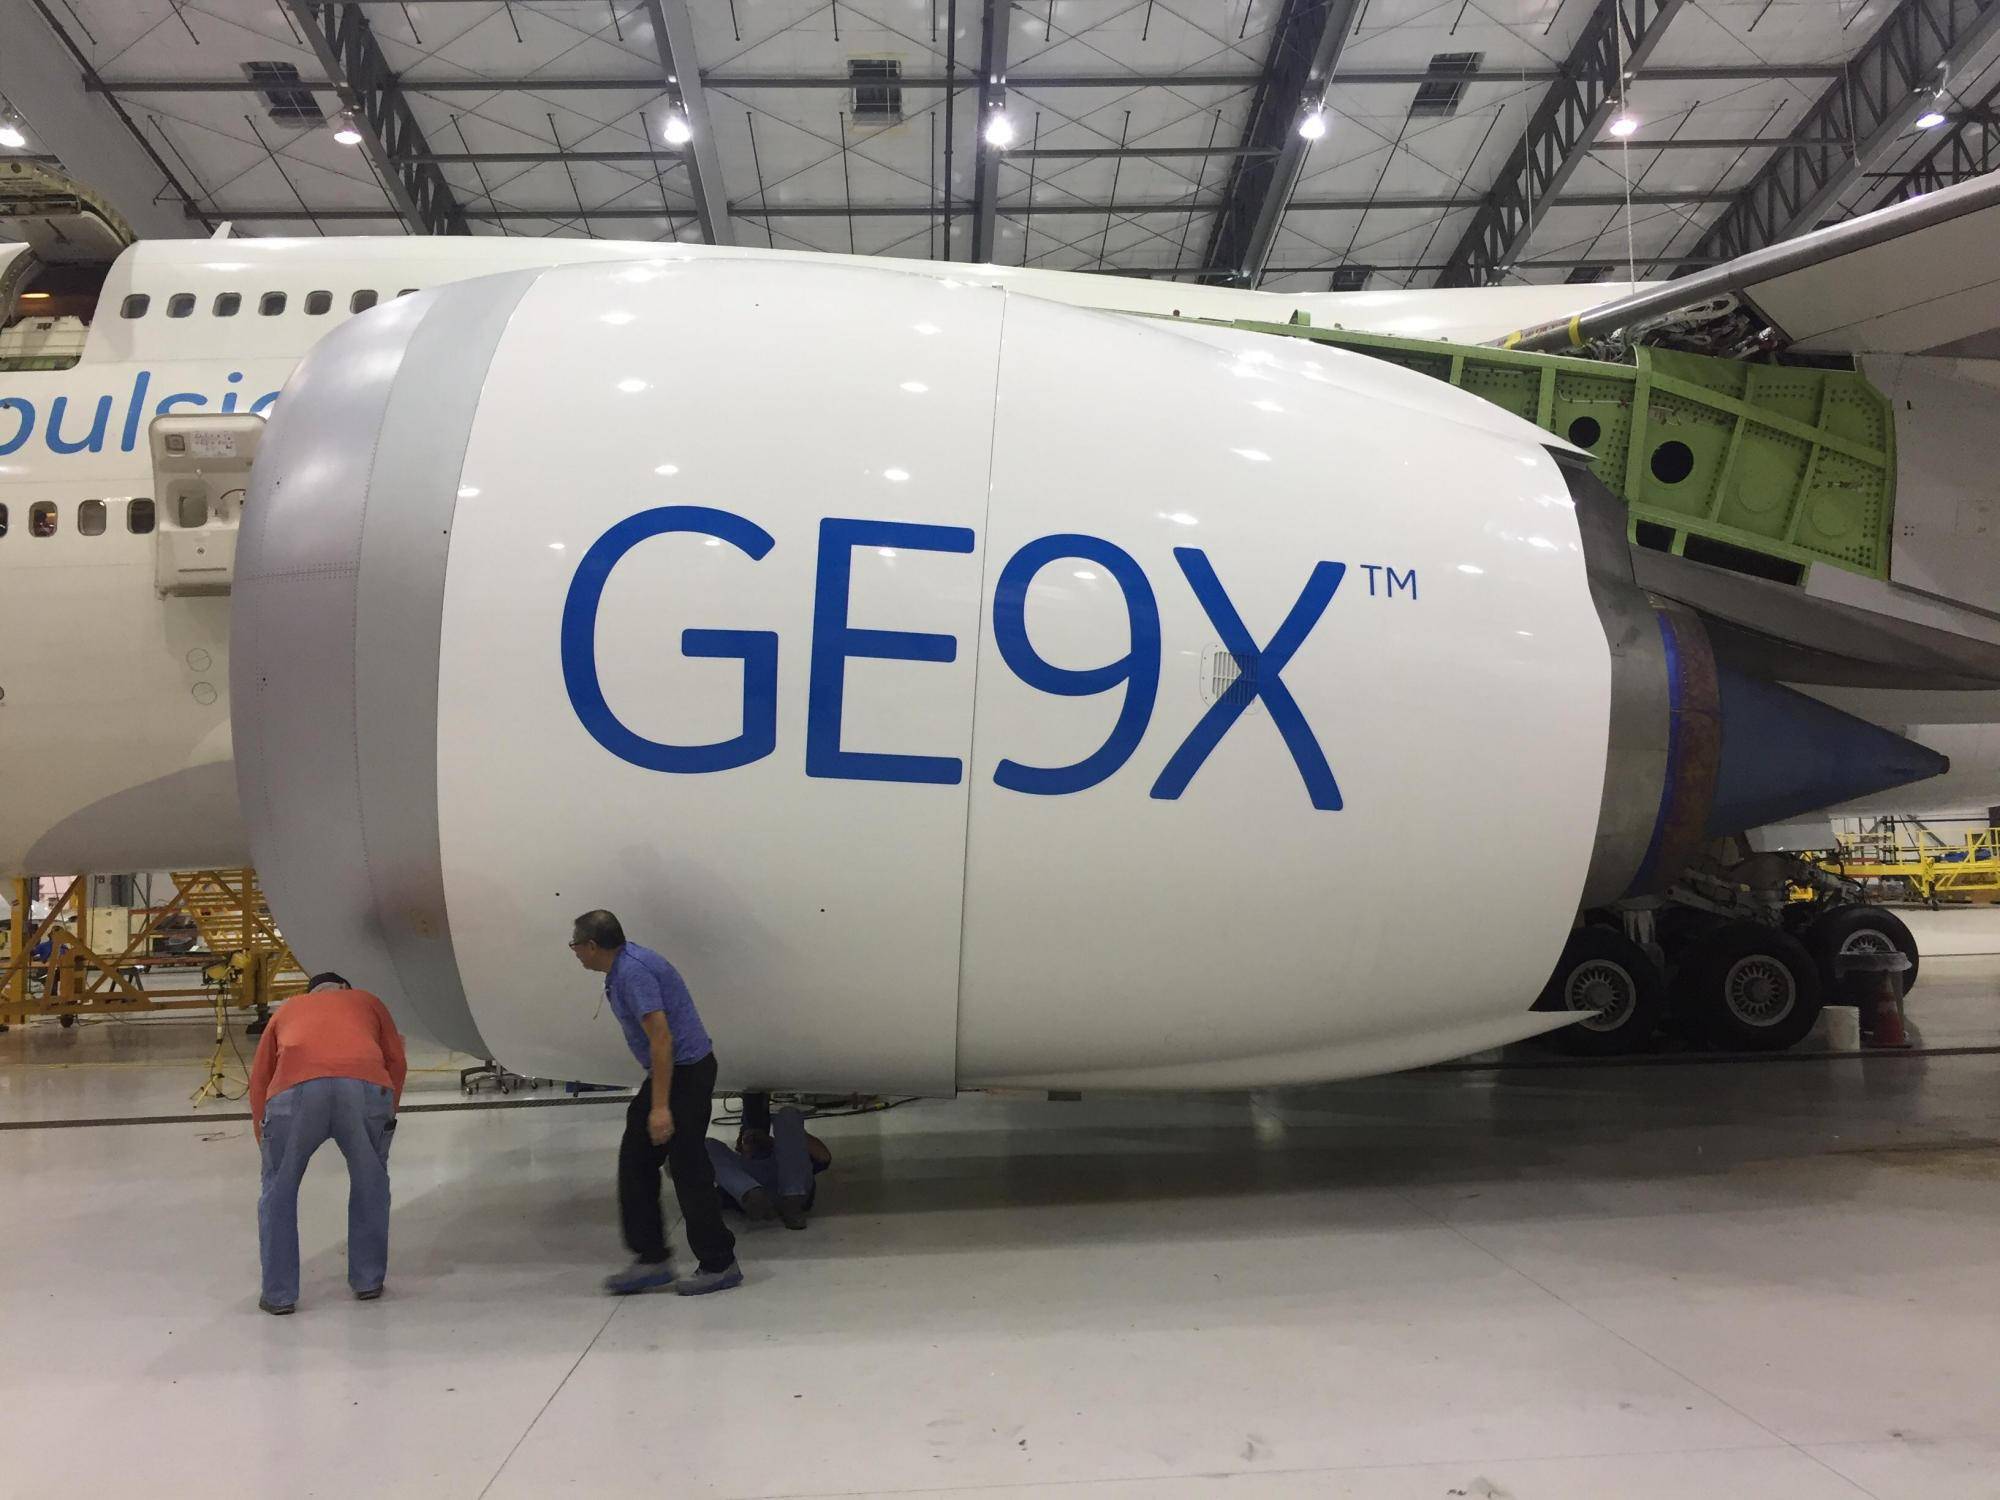 通用电气ge9x发动机,单发推力高达61吨,打破吉尼斯世界纪录